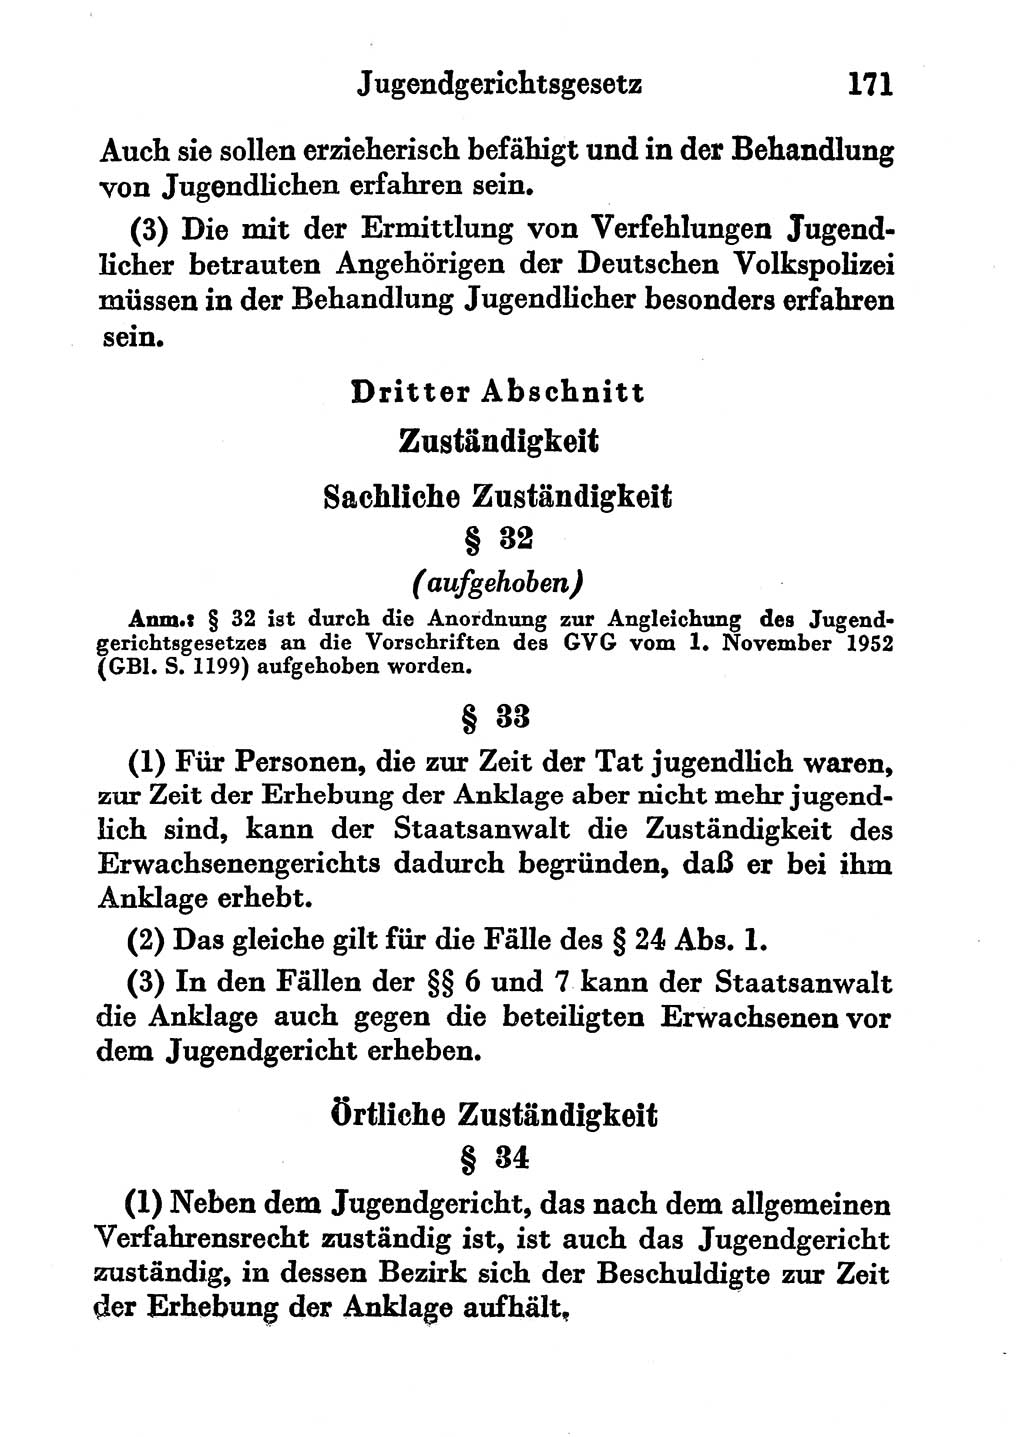 Strafgesetzbuch (StGB) und andere Strafgesetze [Deutsche Demokratische Republik (DDR)] 1956, Seite 171 (StGB Strafges. DDR 1956, S. 171)